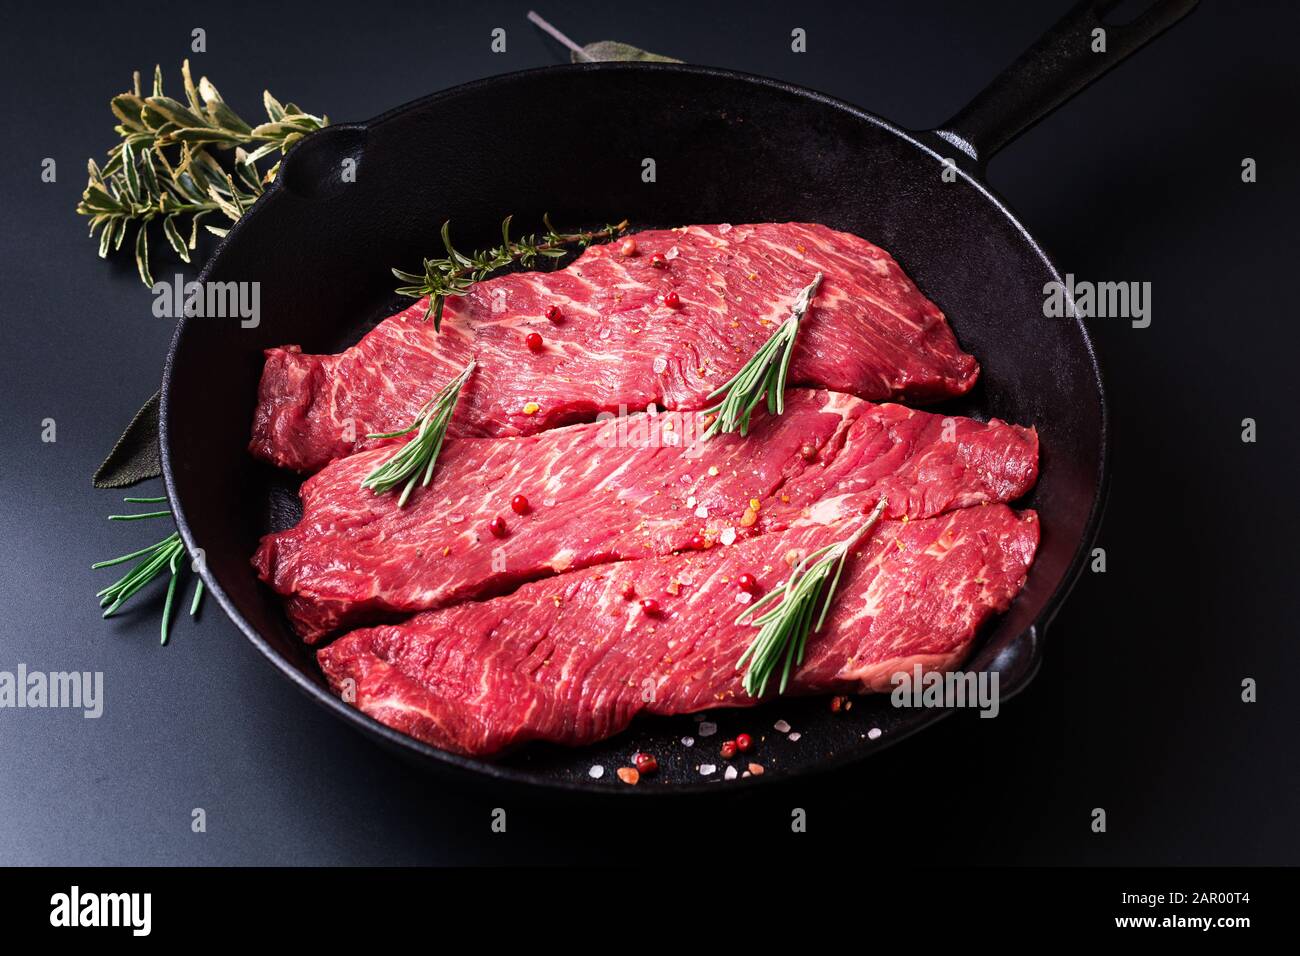 Concept de nourriture viande crue bio filet de boeuf steak dans poêle à frire poêle sur fond noir Banque D'Images